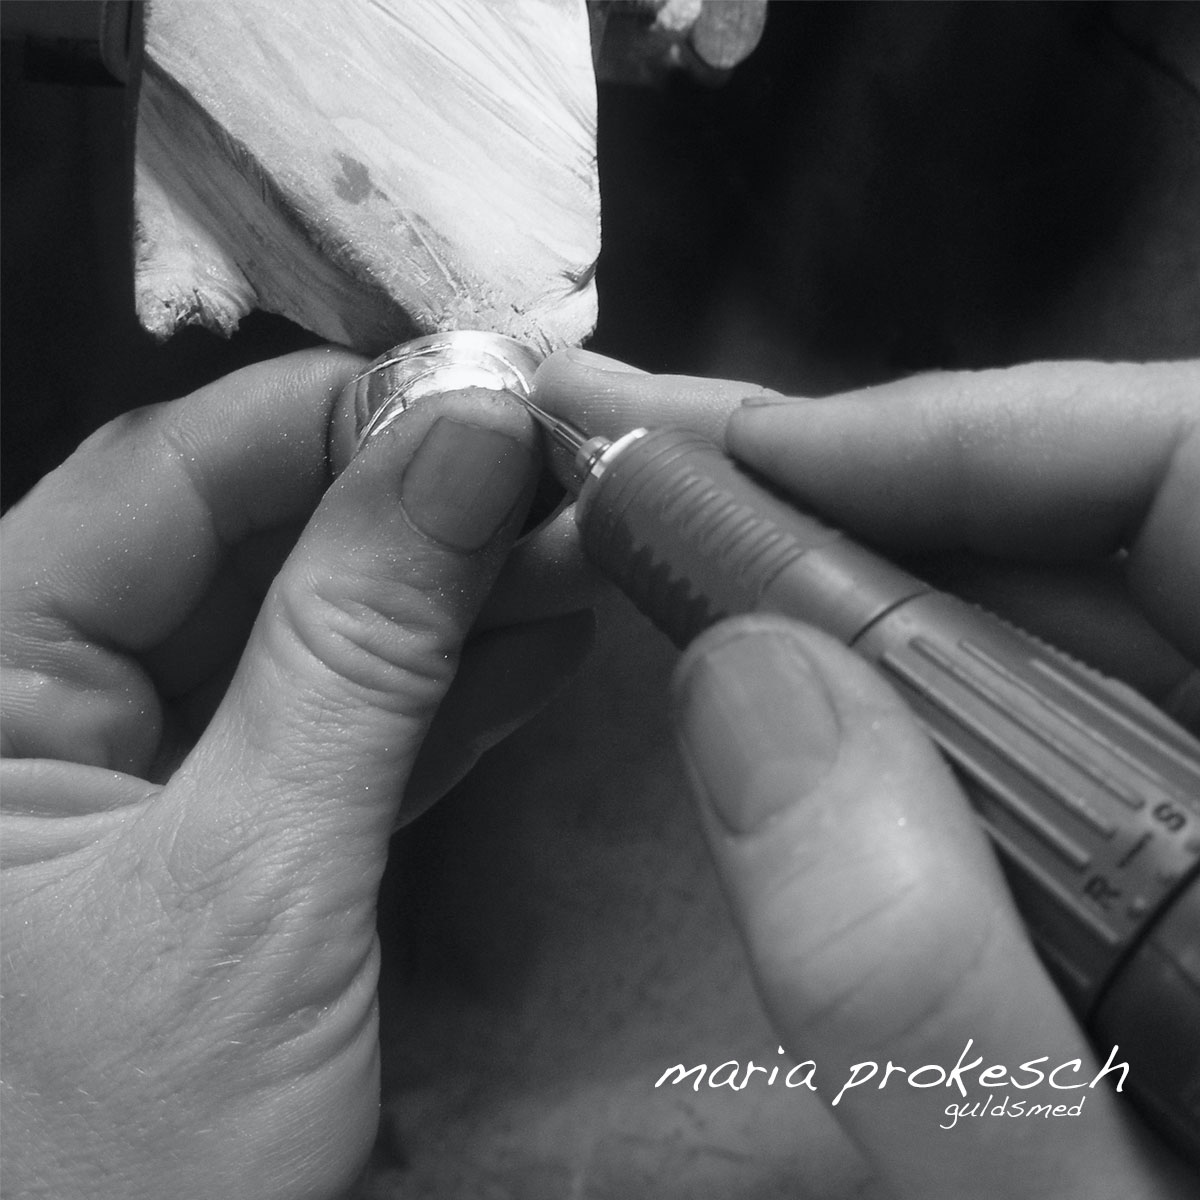 Håndlavede smykker og unikke vielsesringe fra Guldsmed Maria Prokesch. Der bliver arbejdet med fine detaljer og kærlighedshistorier som integreres i smykker. Dansk håndværk i høj kvalitet.